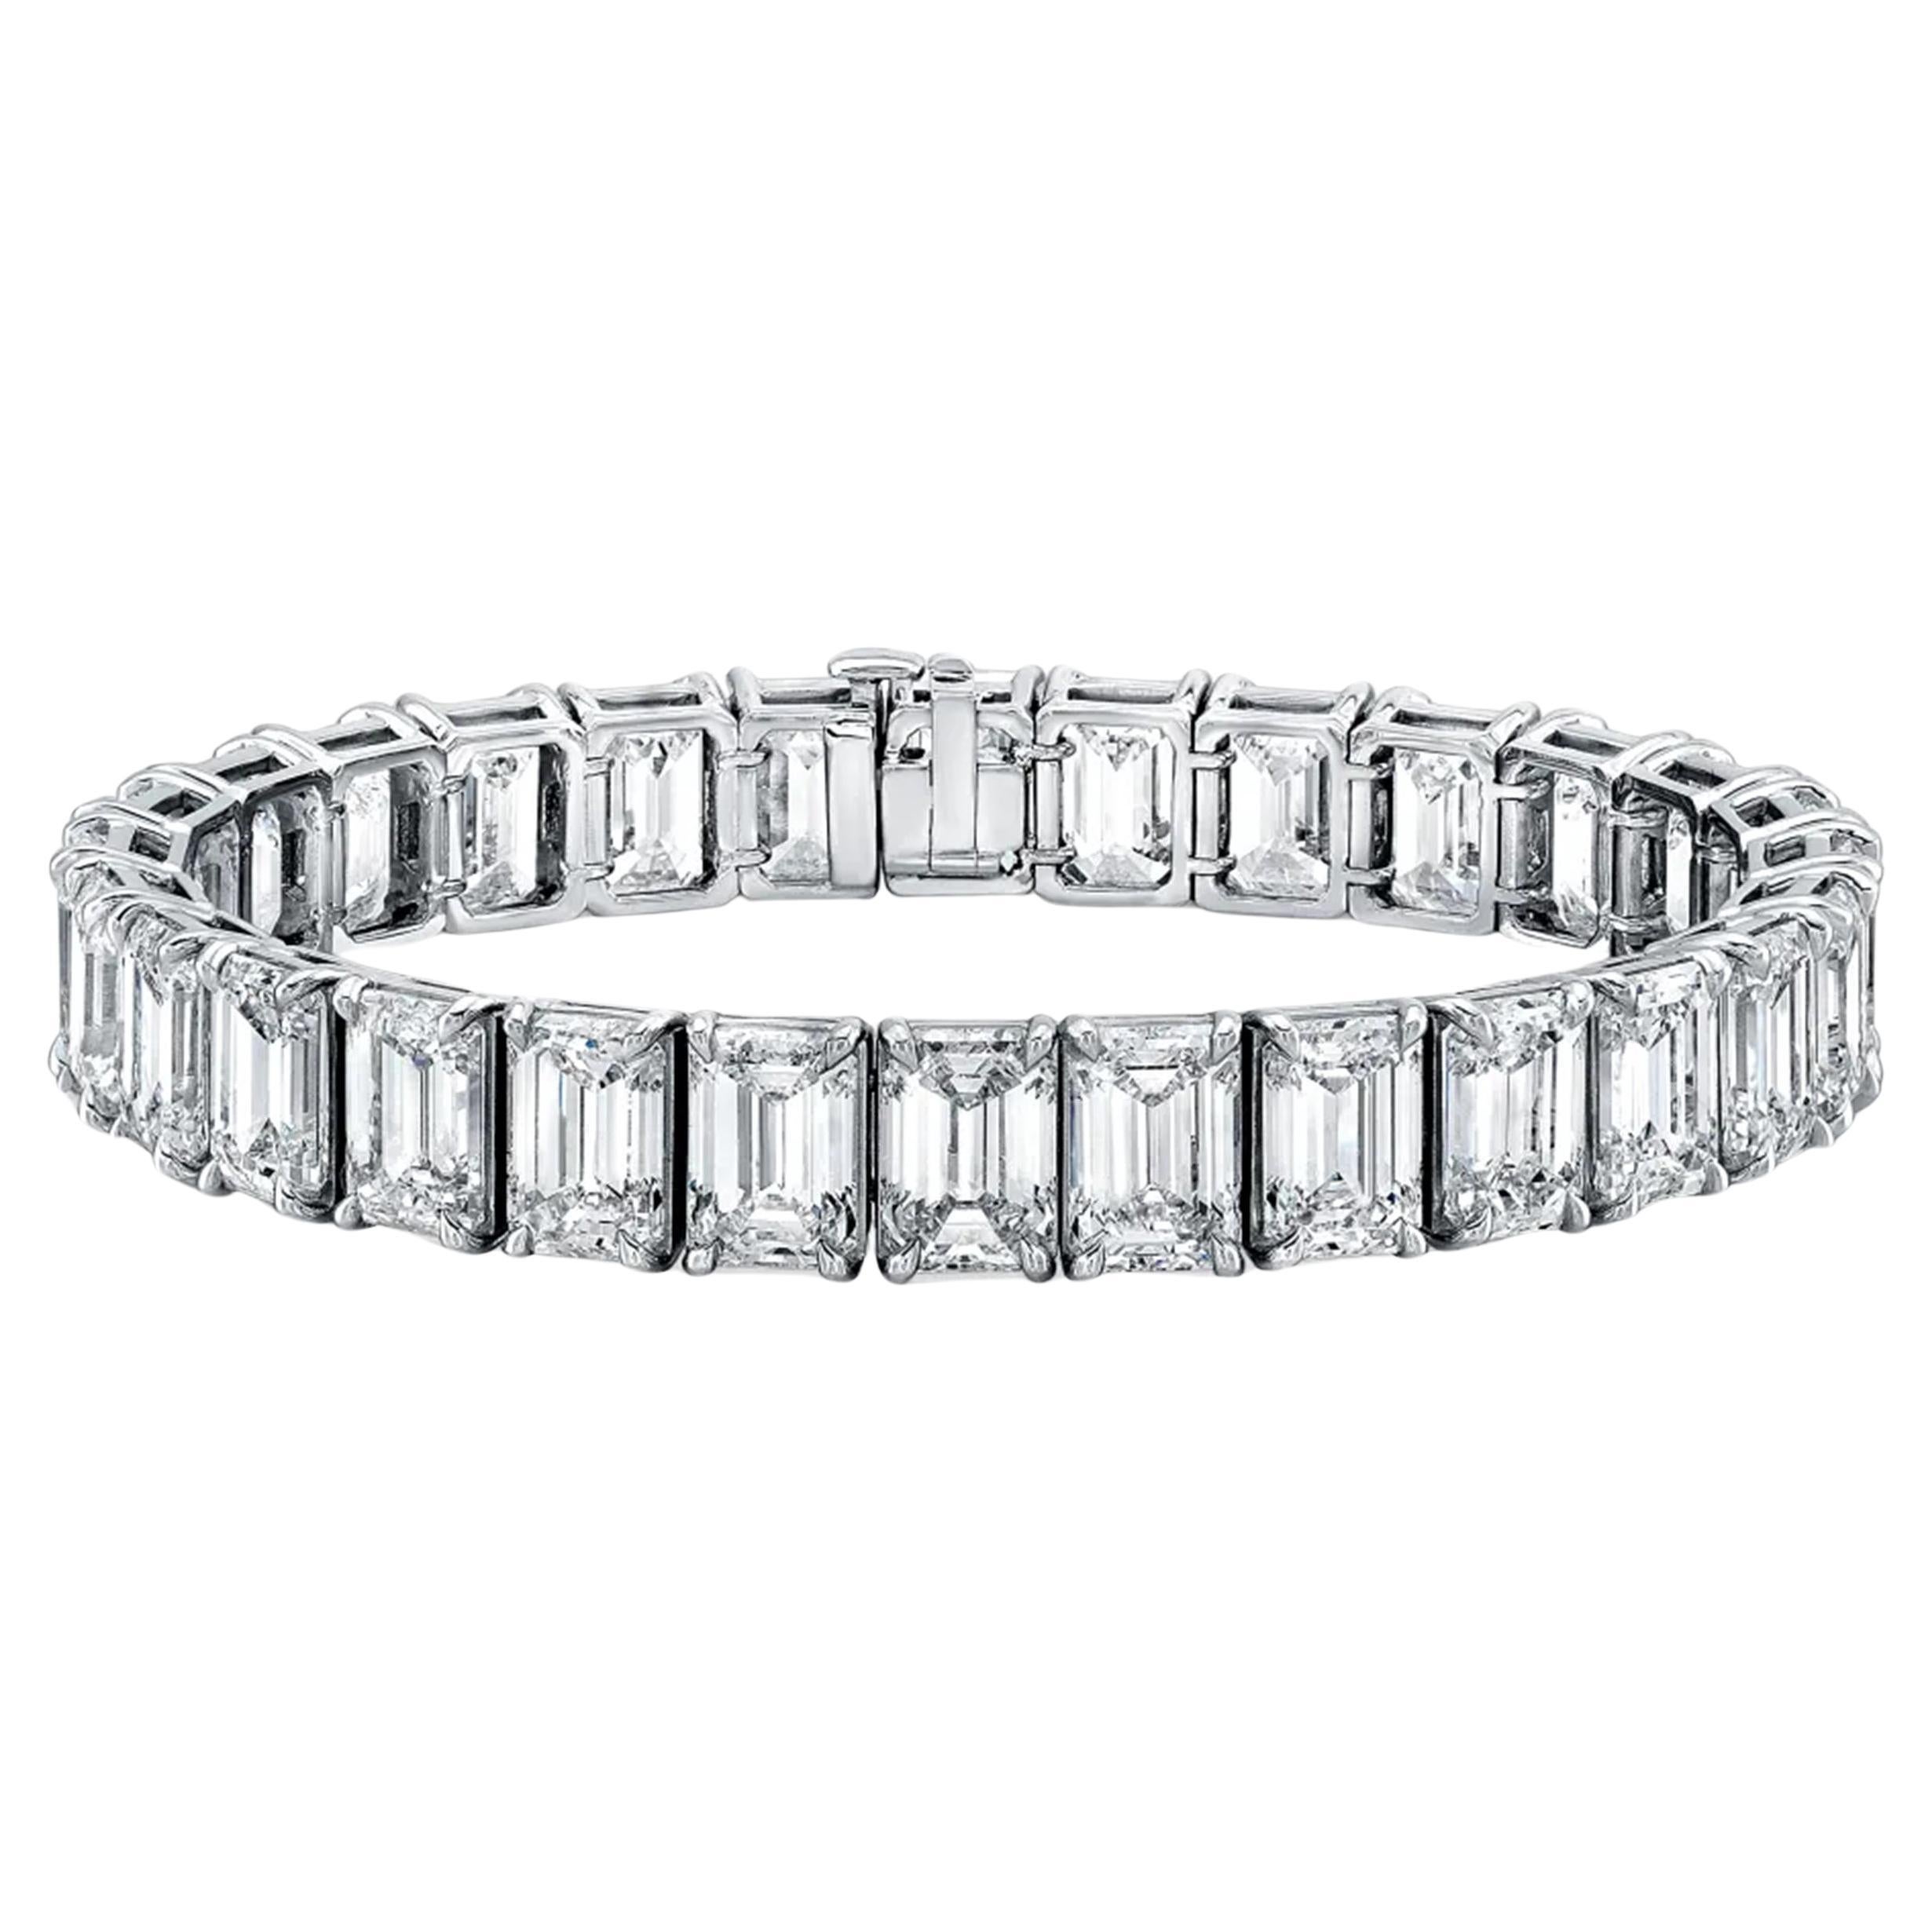 Entdecken Sie die unvergleichliche Raffinesse dieses majestätischen Armbands mit einer makellosen Anordnung von 26 Karat aus 42 GIA-zertifizierten Diamanten im Smaragdschliff, von denen jeder einen außergewöhnlichen F-Farbgrad und eine Reinheit von